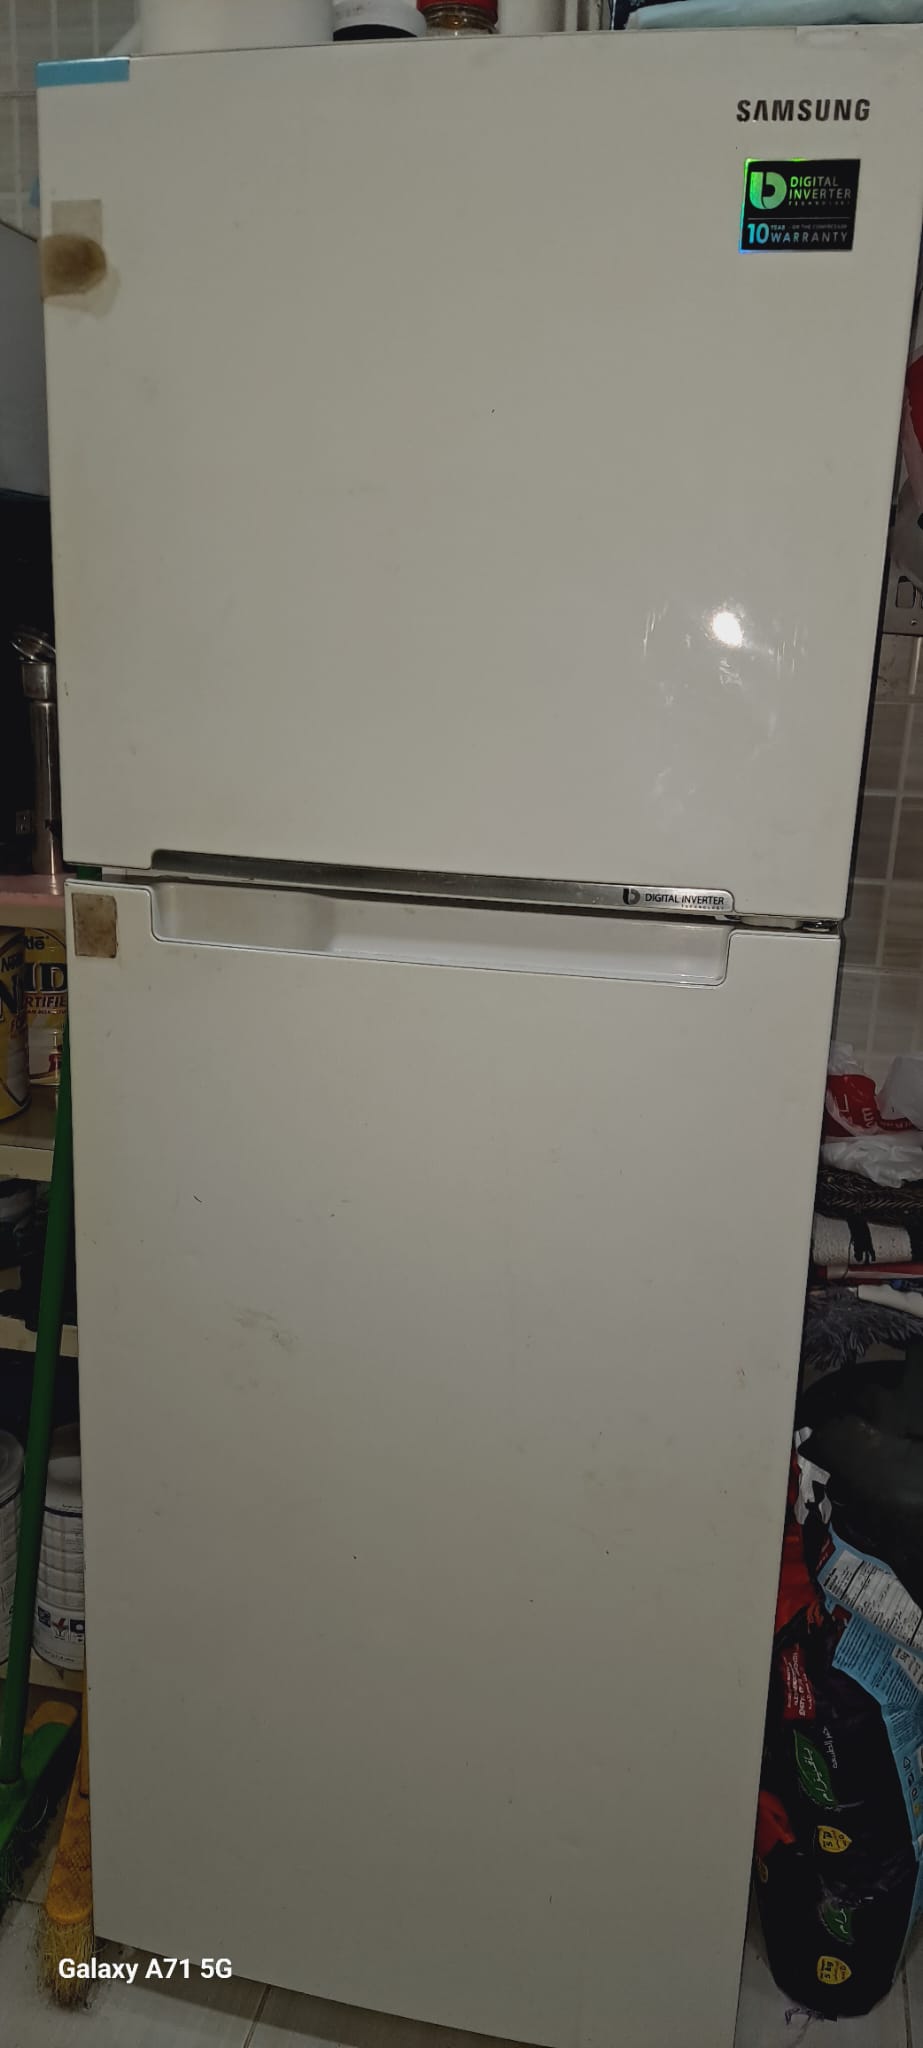 Refrigerator and ovan